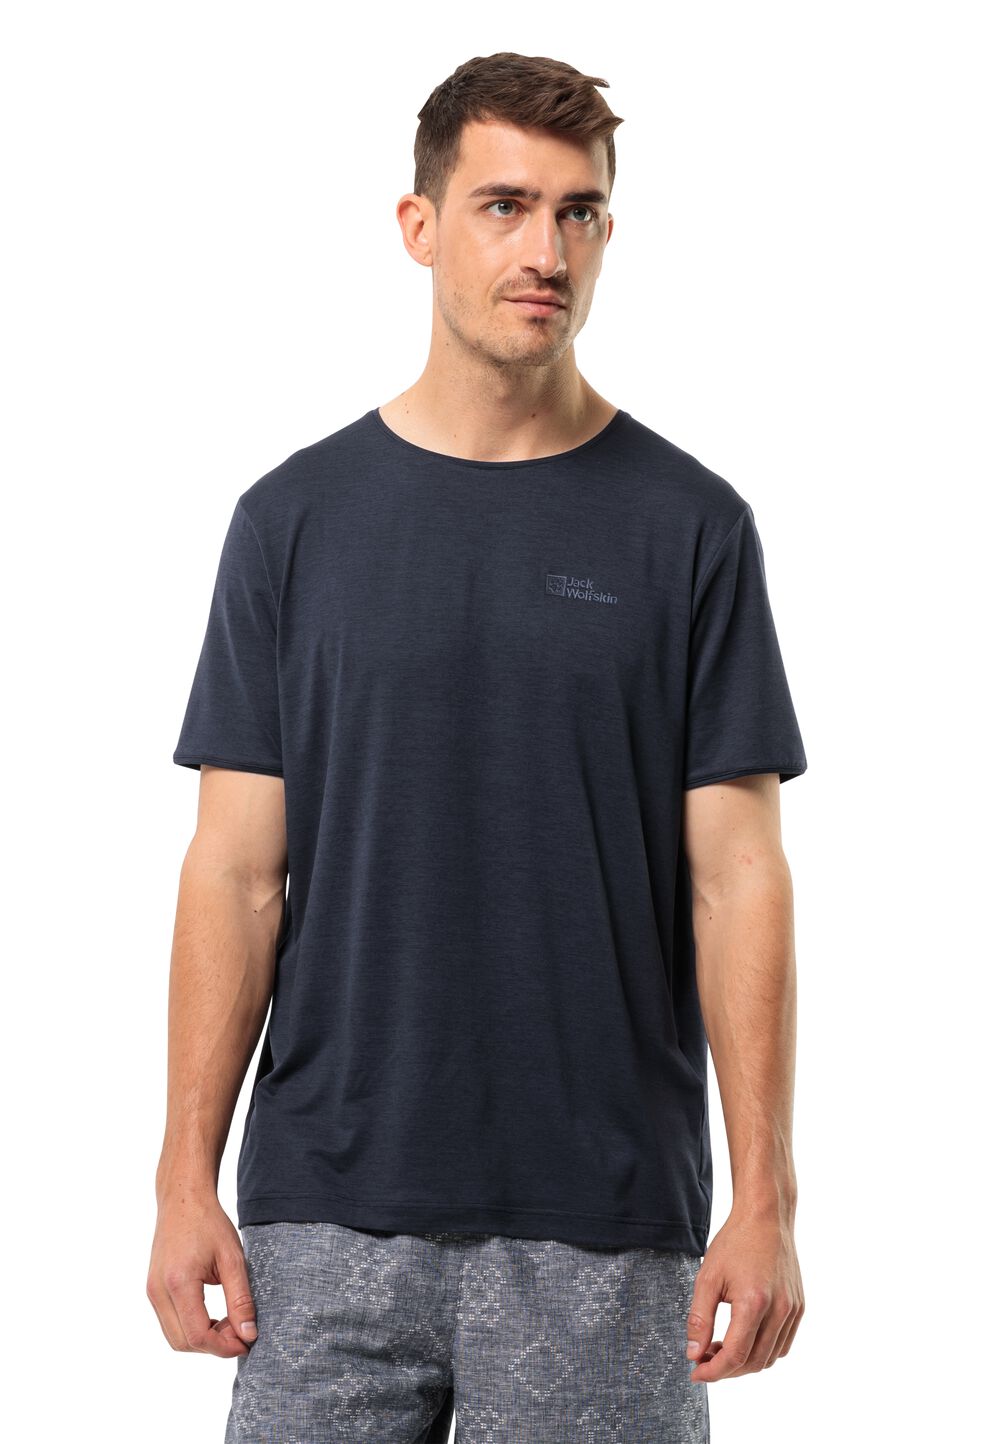 Jack Wolfskin Funktionsshirt Herren Travel T-Shirt Men XL blau night blue von Jack Wolfskin